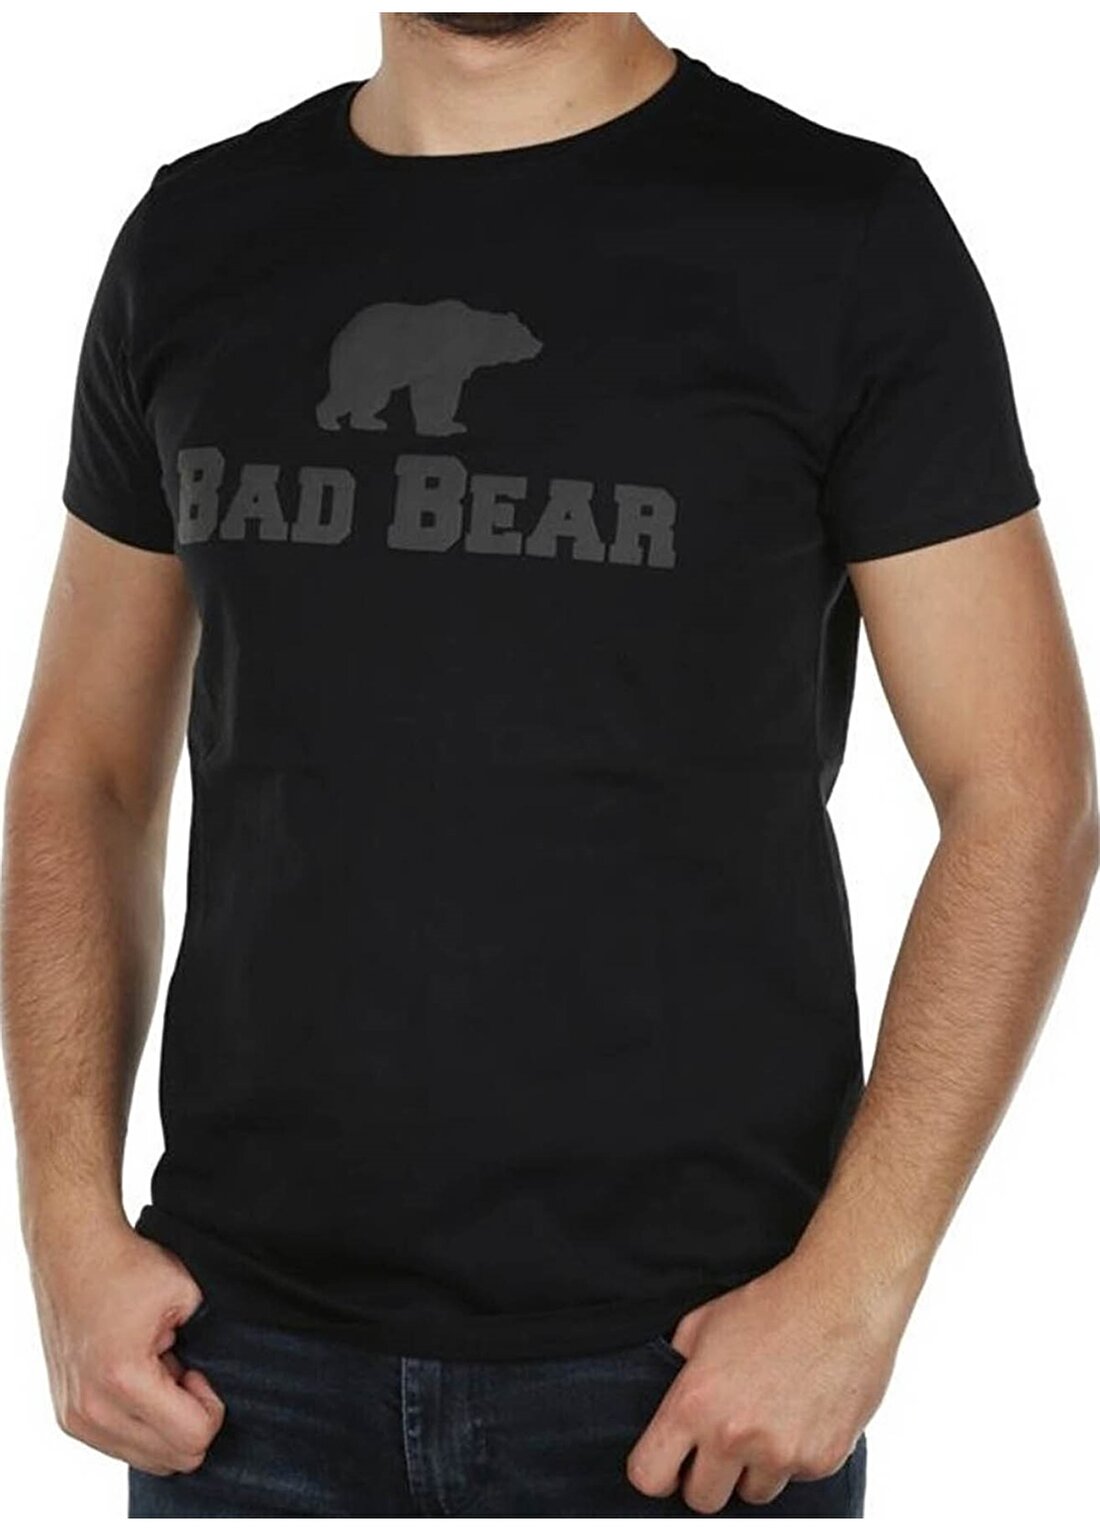 Bad Bear Midnight T-Shirt